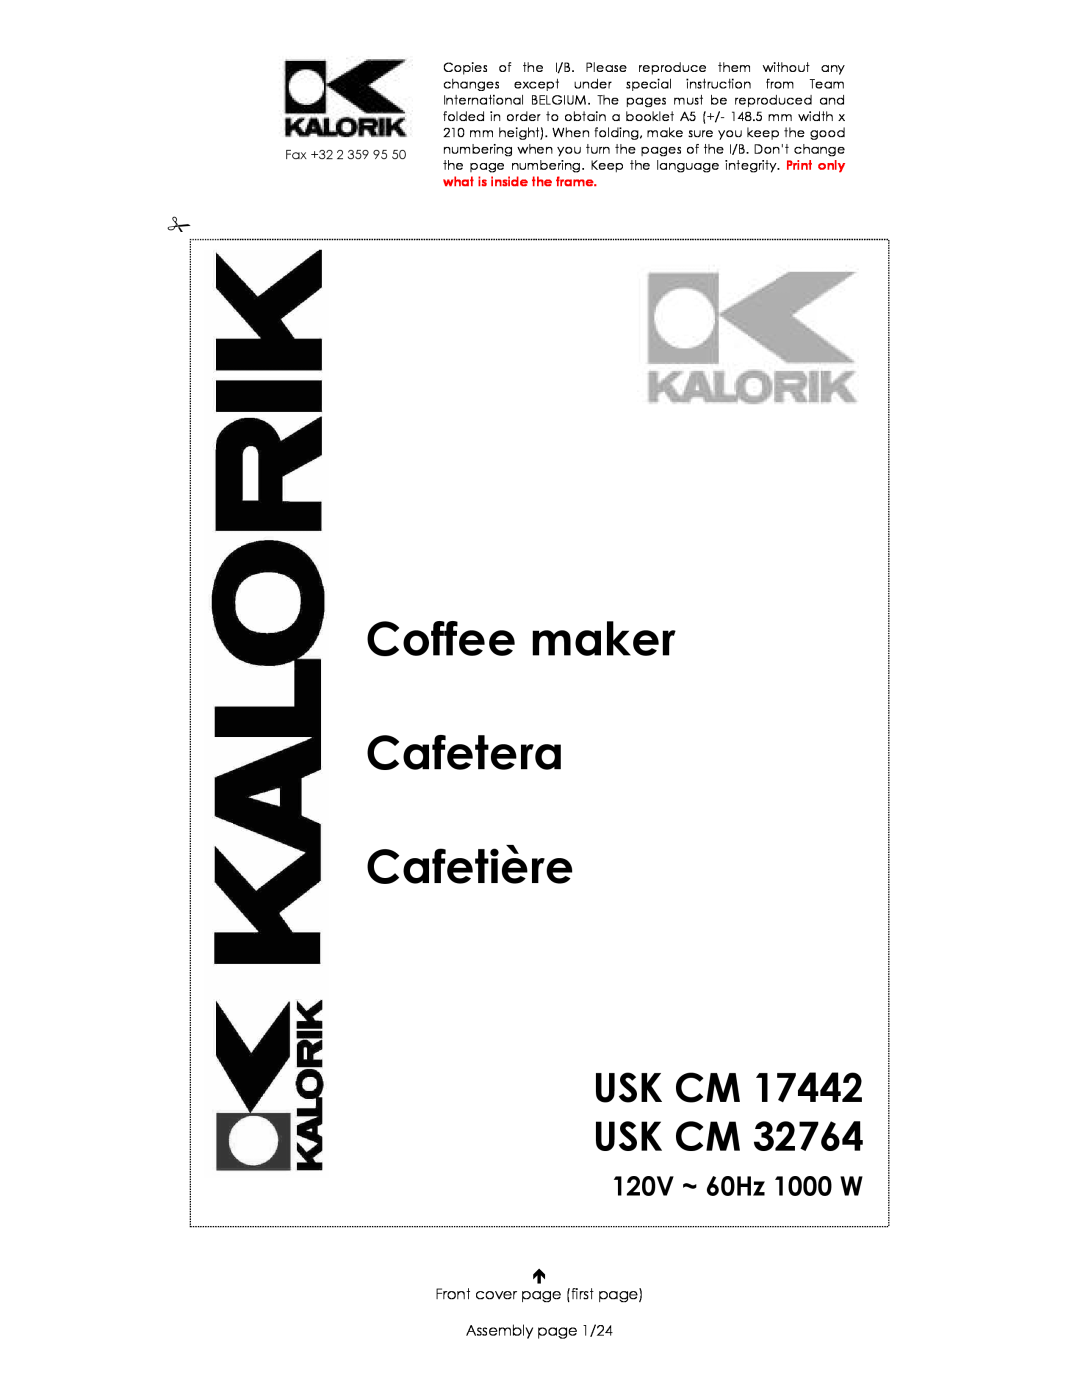 Kalorik USK CM 32764, USK CM 17442 manual Usk Cm Usk Cm, 120V ~ 60Hz 1000 W, Coffee maker Cafetera Cafetière 